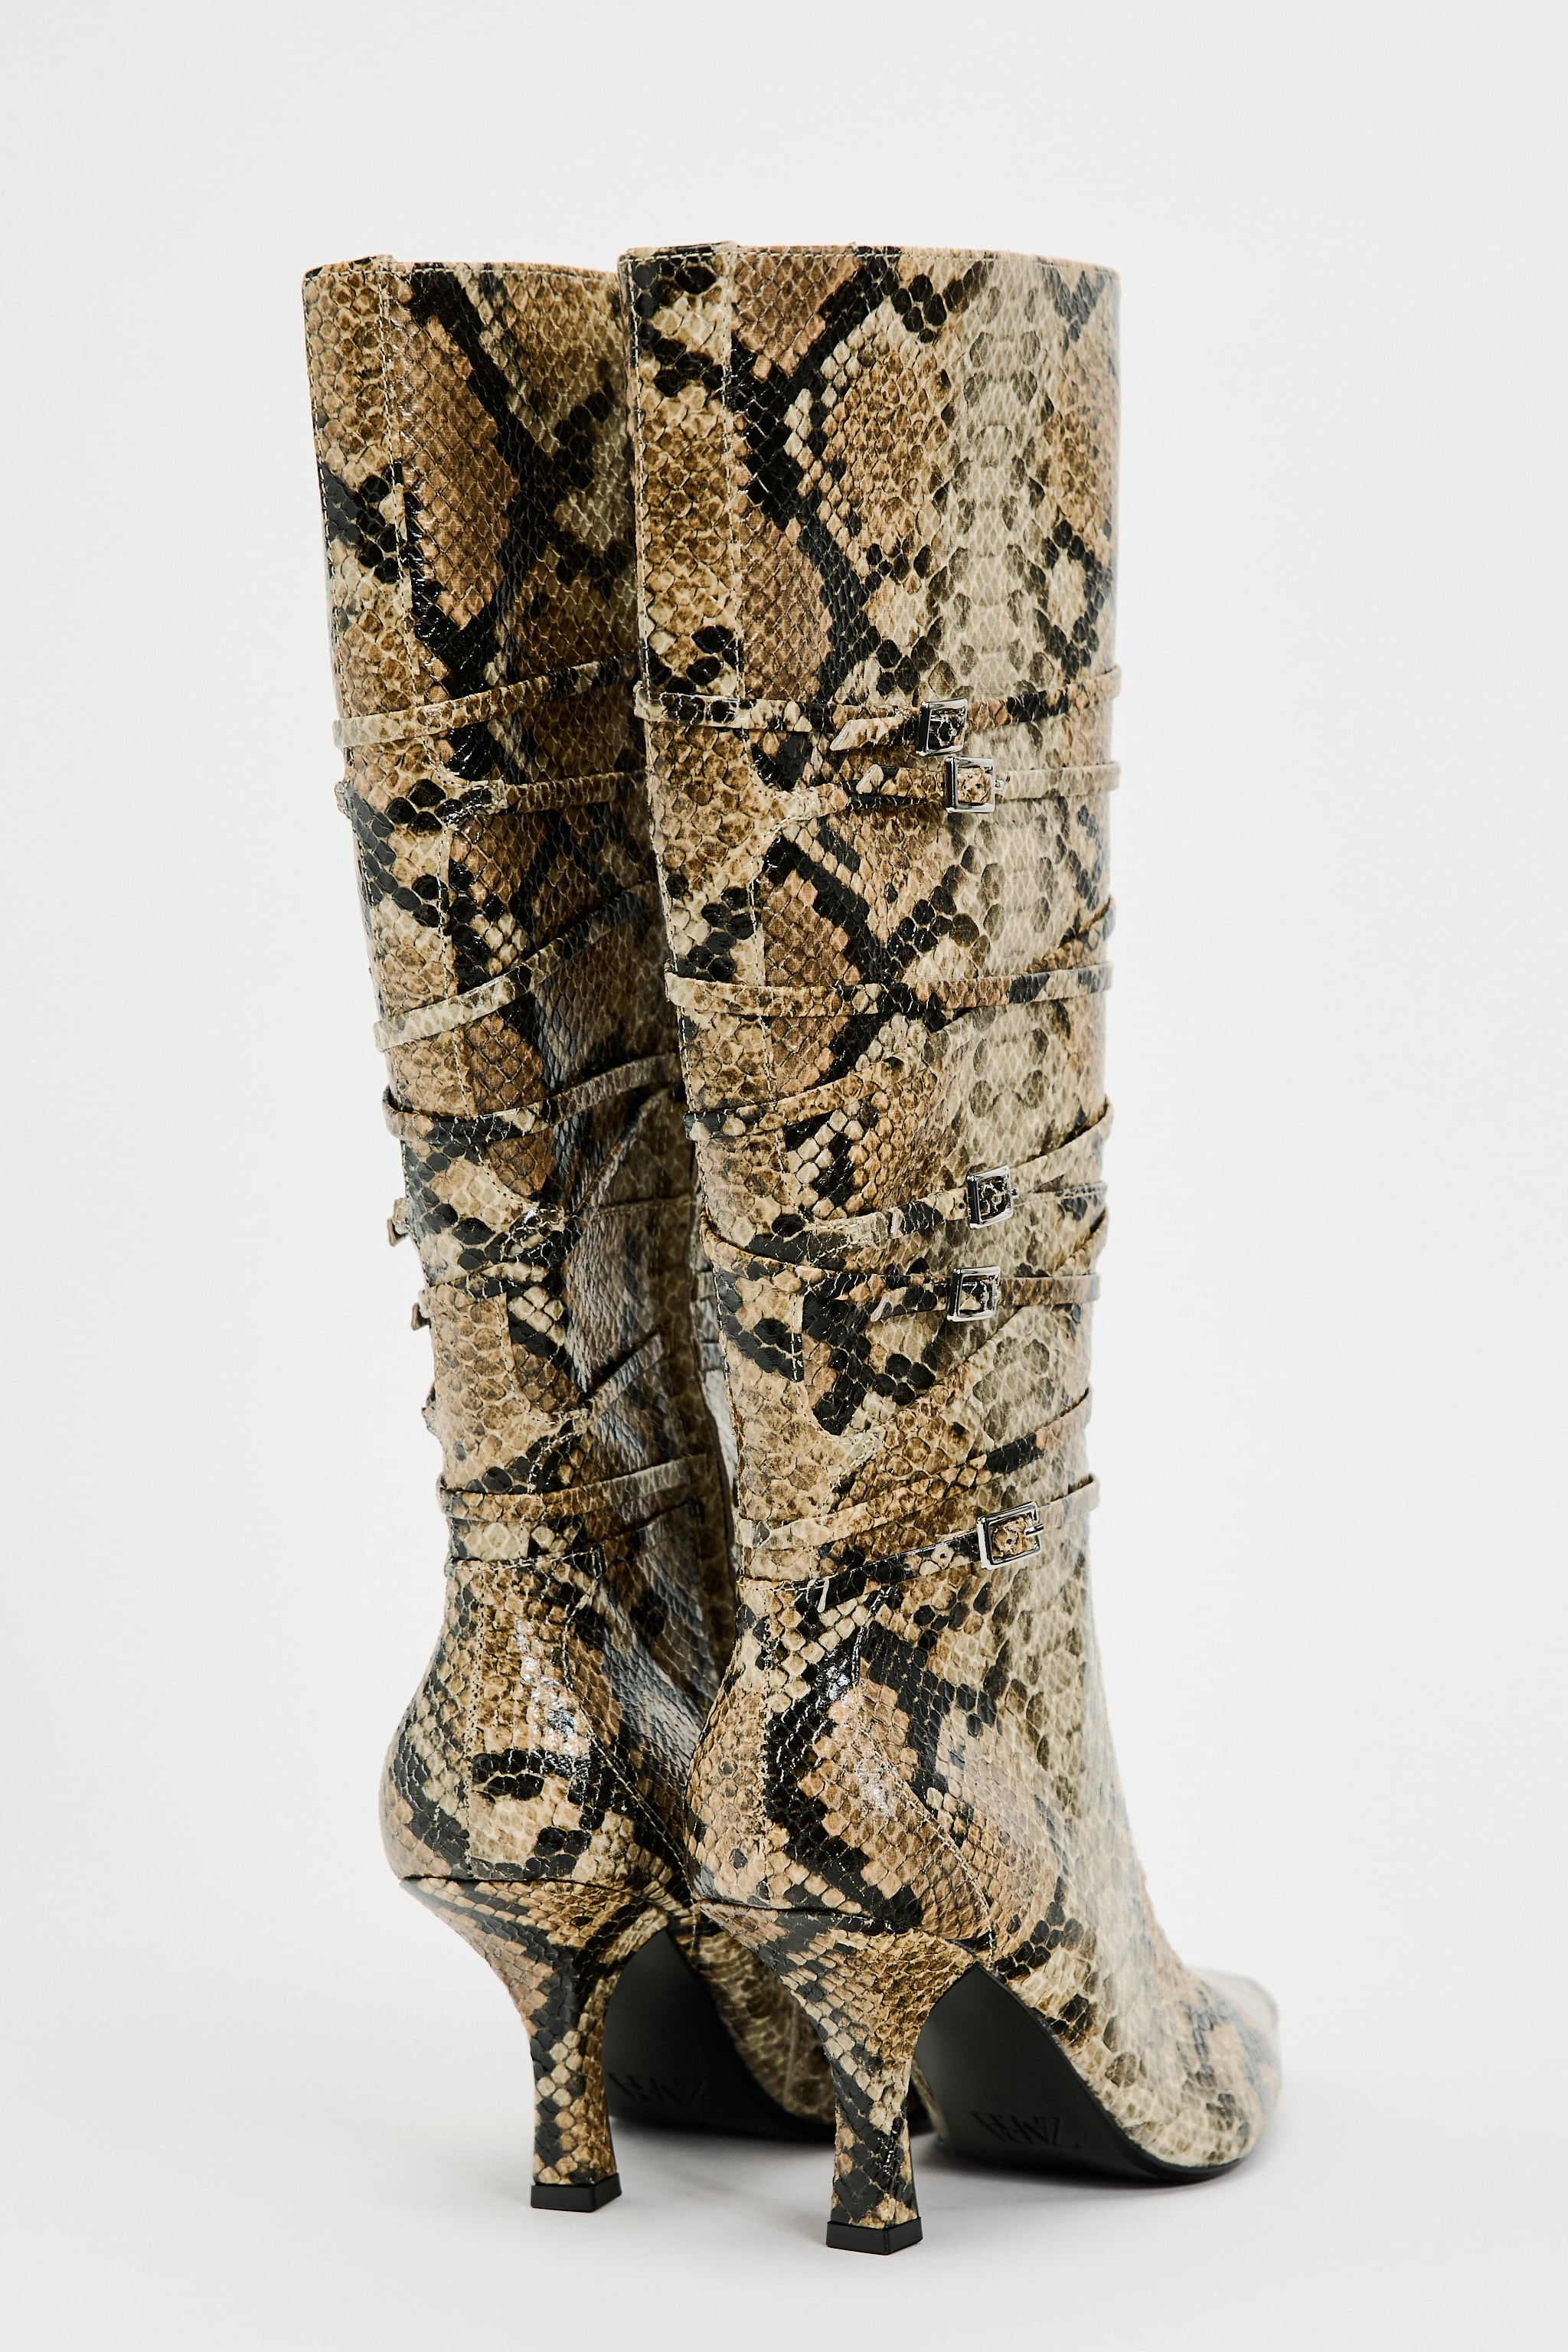 Zara + Animal Print Excessive Heel Boots